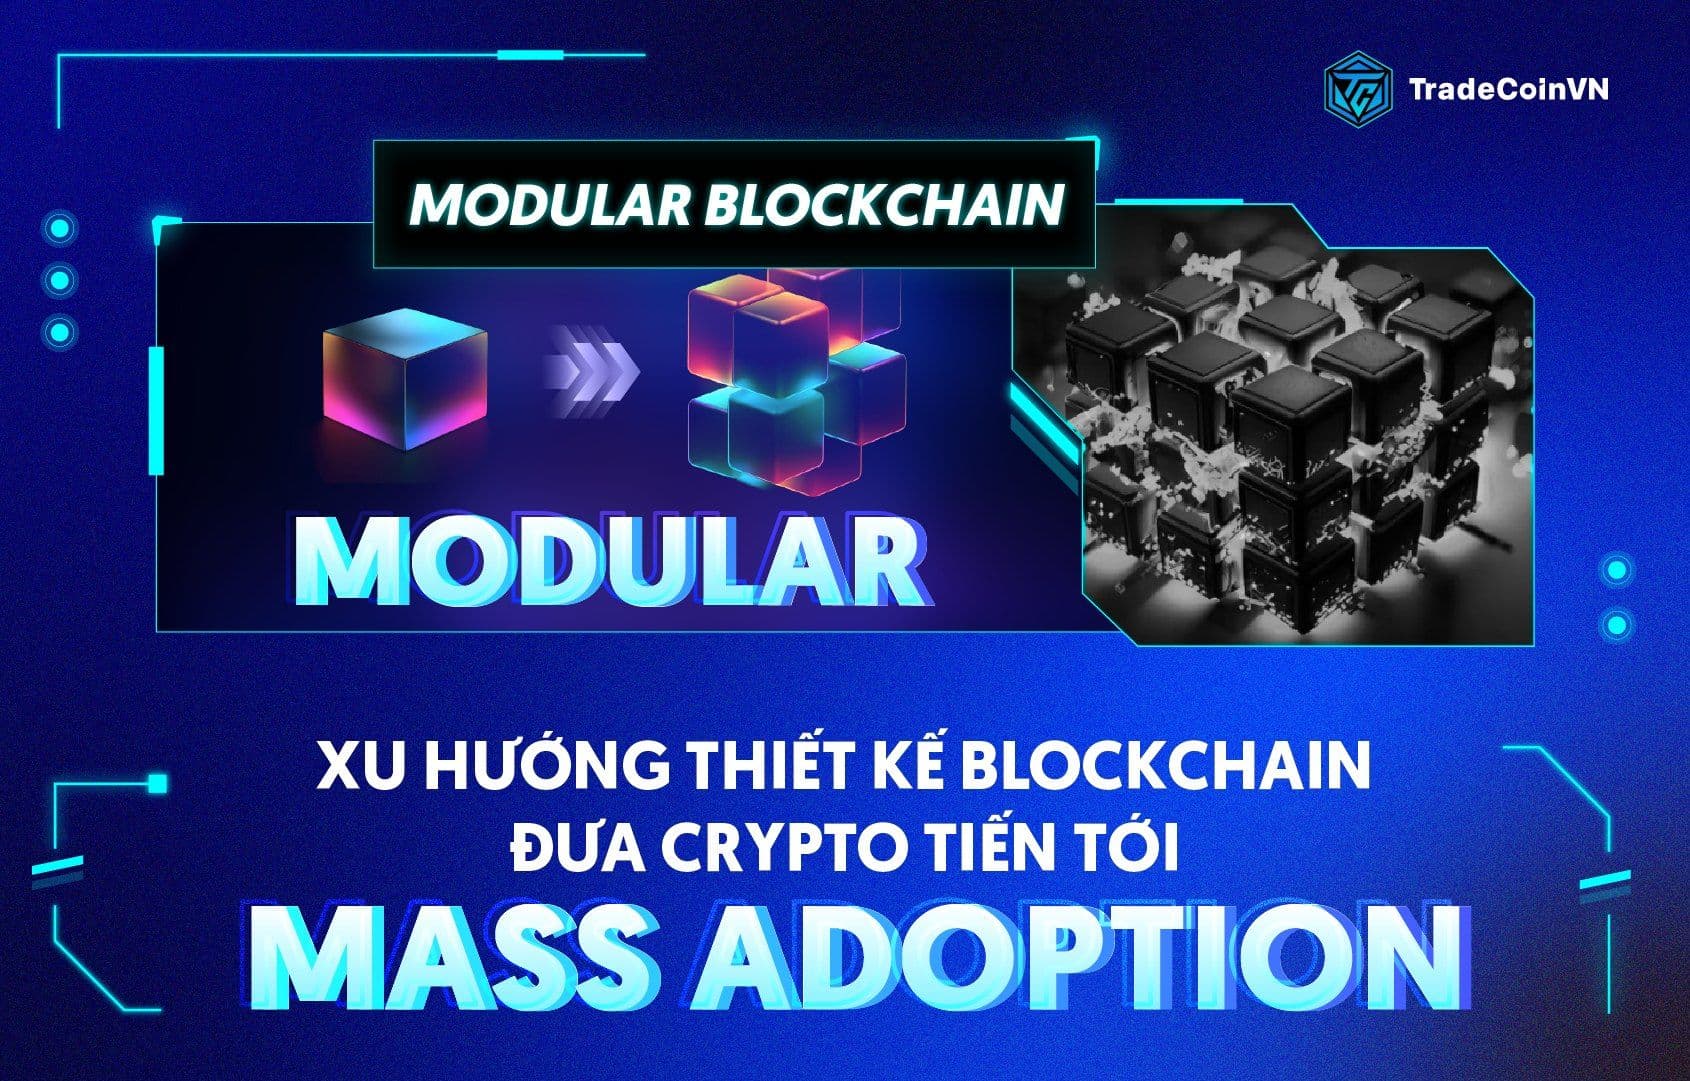 Modular Blockchain: Xu hướng thiết kế Blockchain đưa Crypto tiến tới Mass Adoption